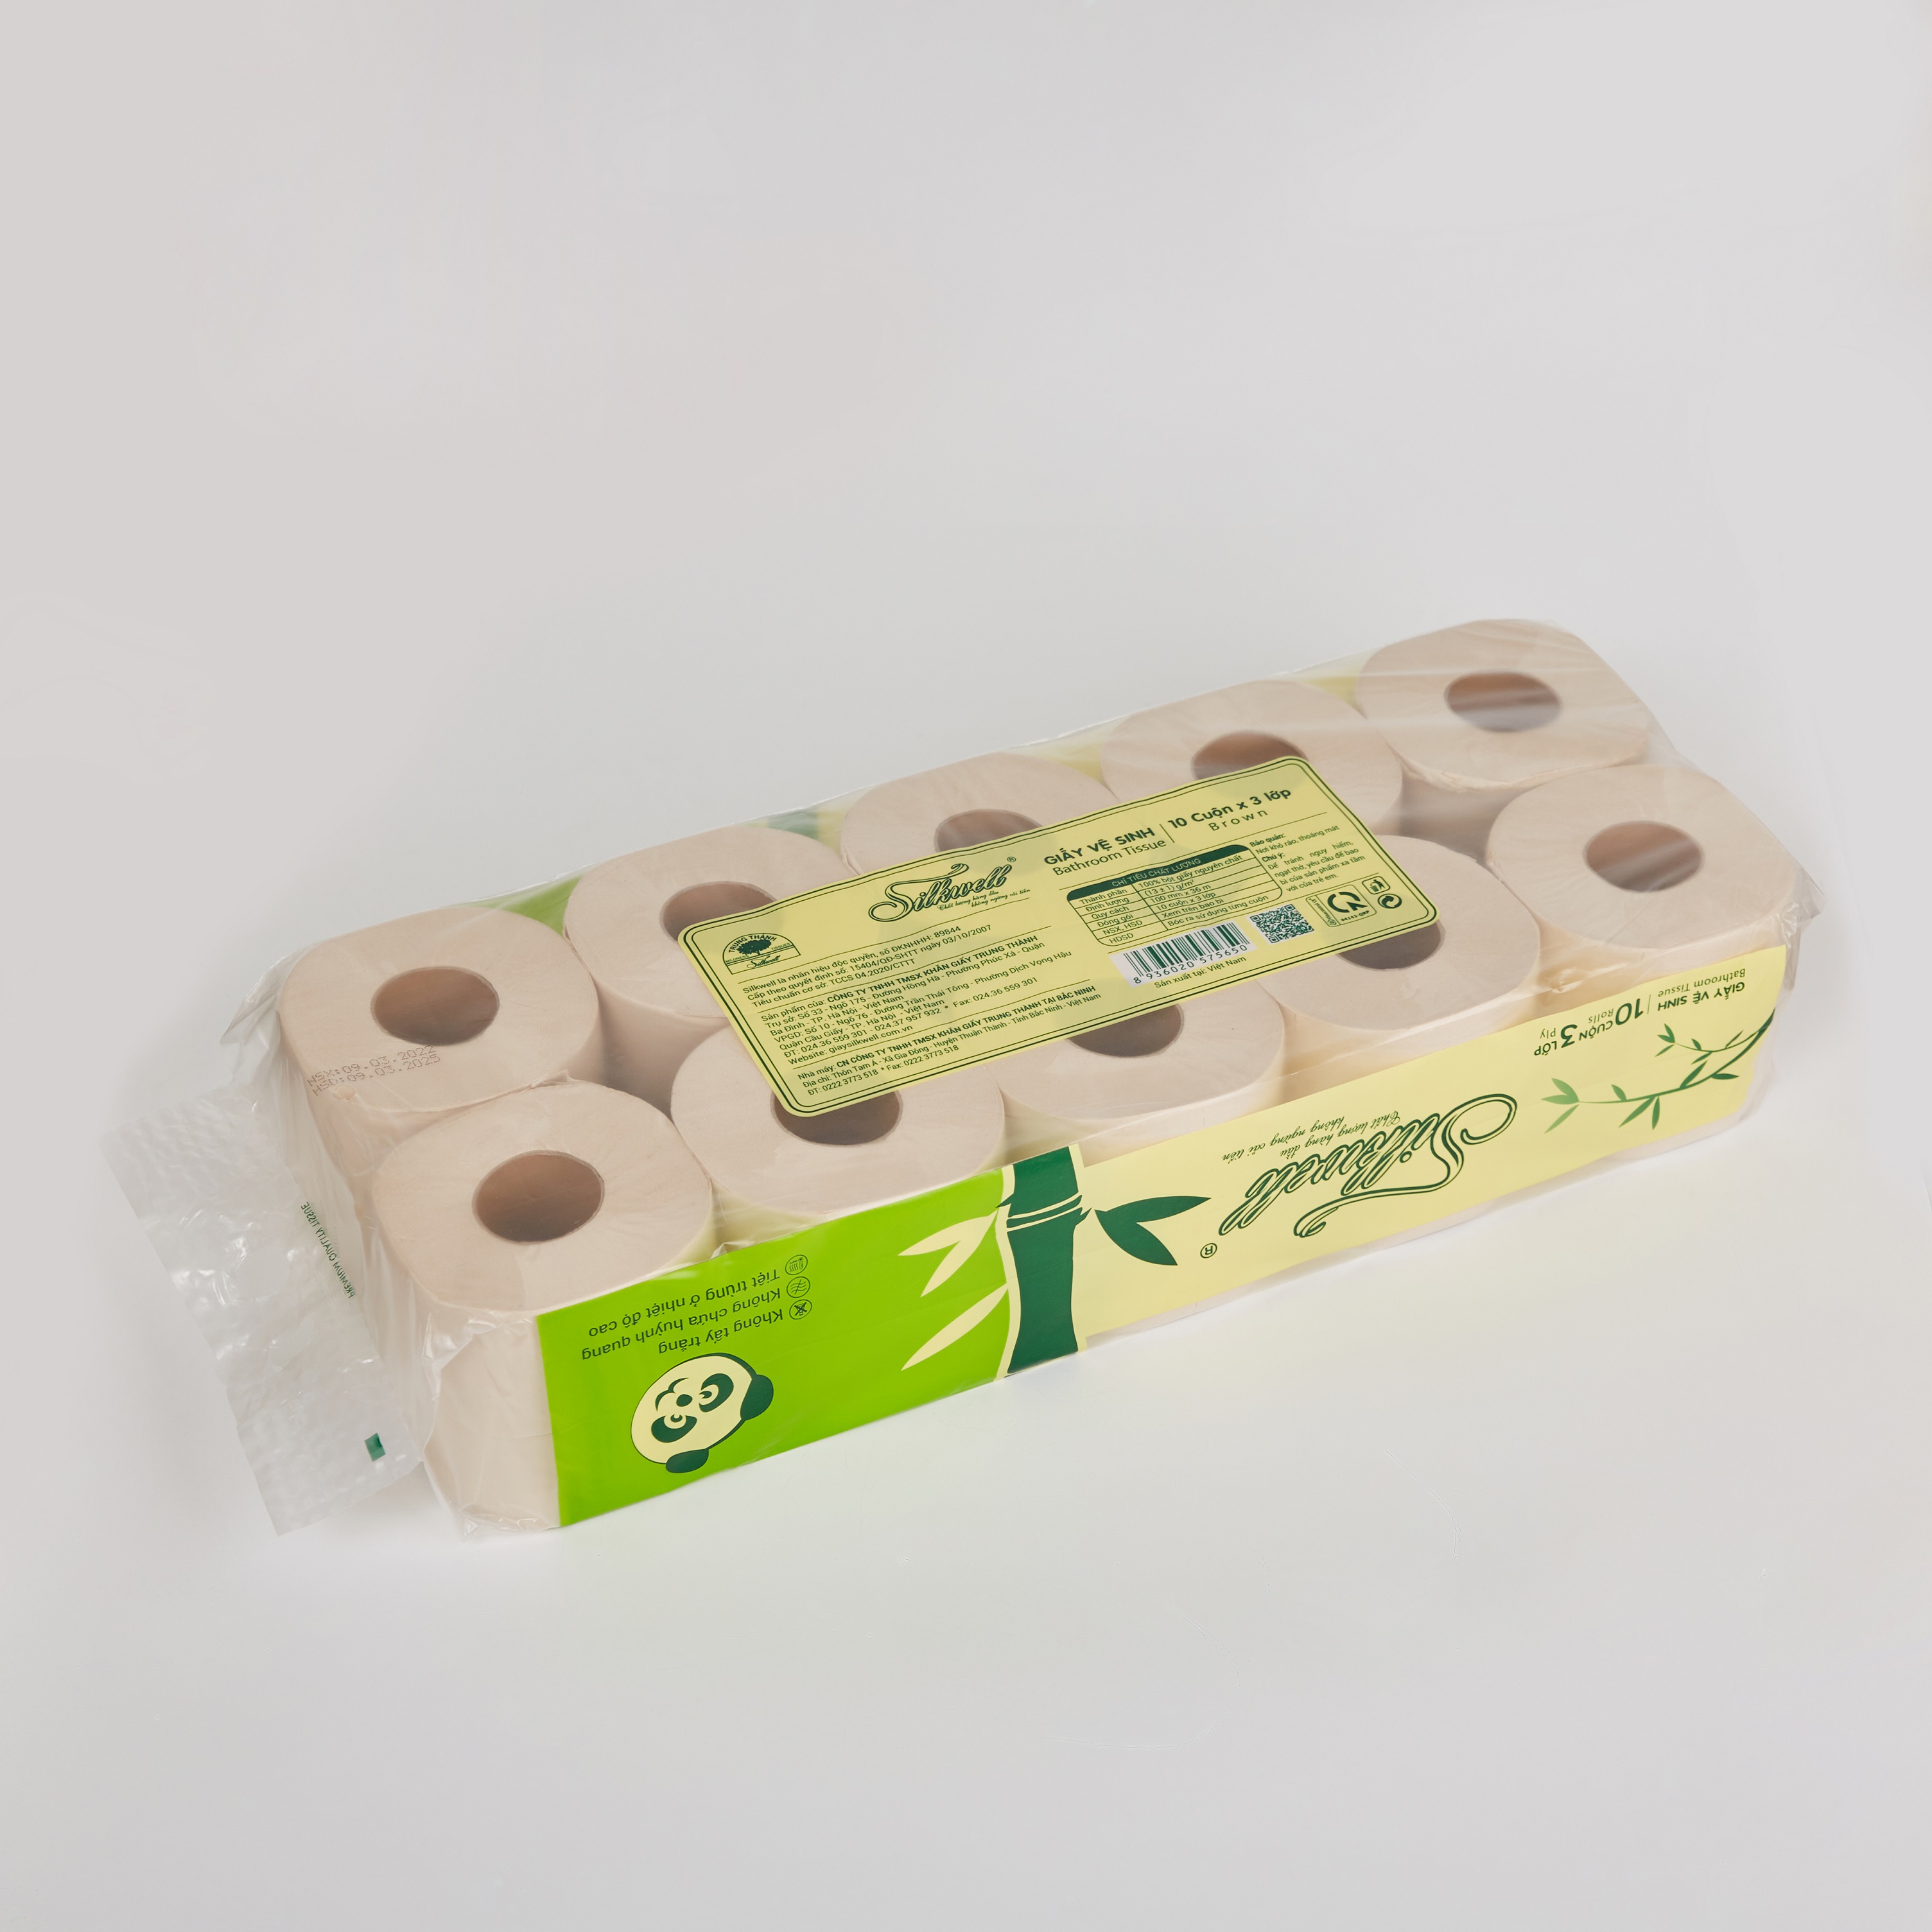 Giấy vệ sinh gấu trúc Silkwell 10 cuộn 3 lớp có lõi, giấy vệ sinh không tẩy trắng, an toàn hàng chính hãng